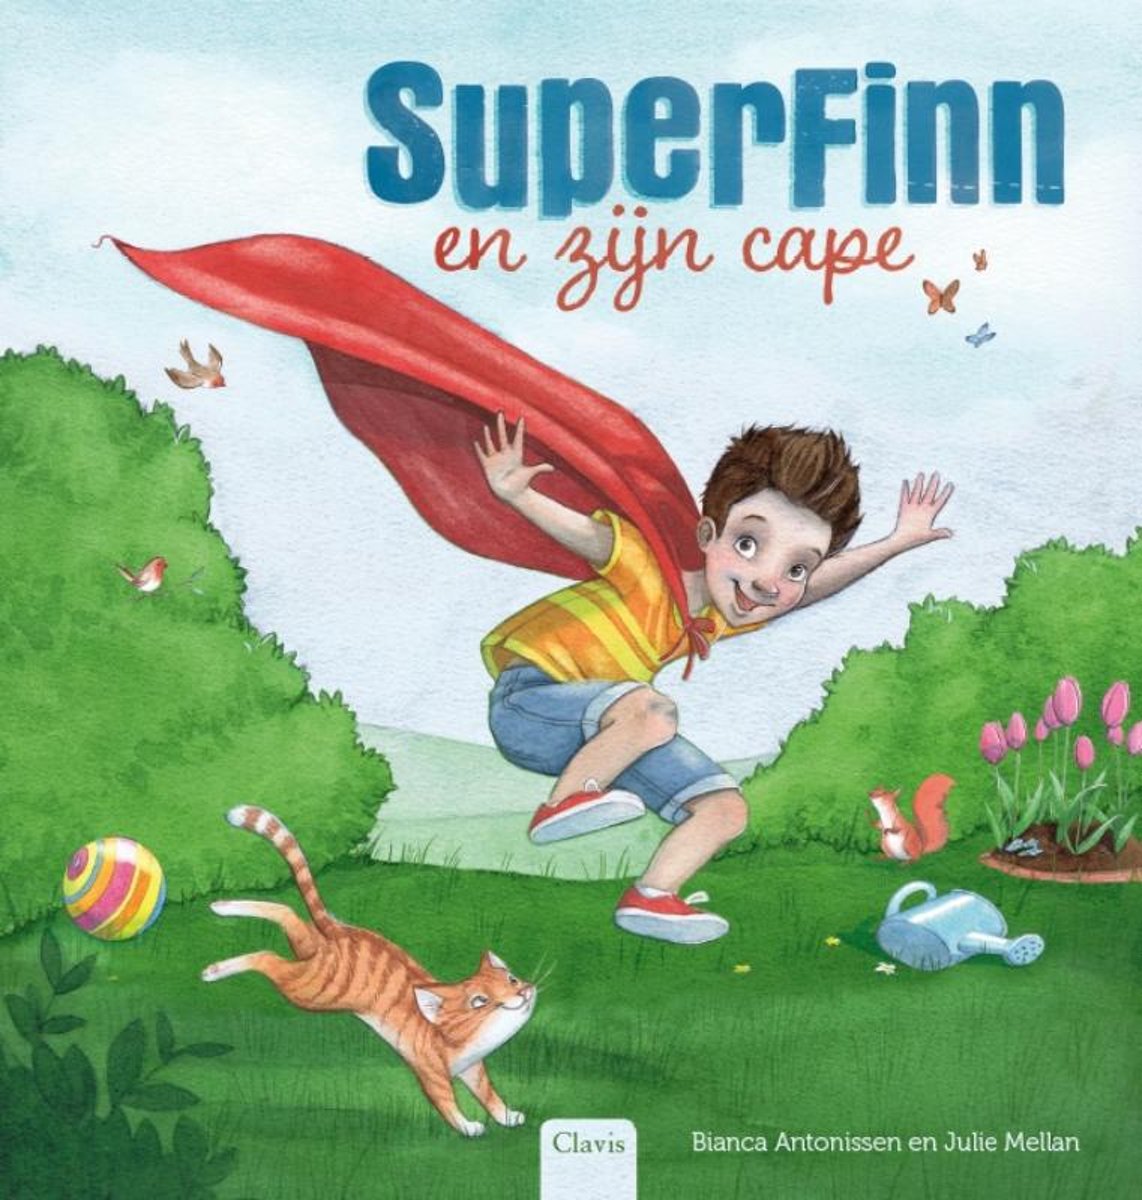 Je bekijkt nu Boekentip: SuperFinn en zijn cape